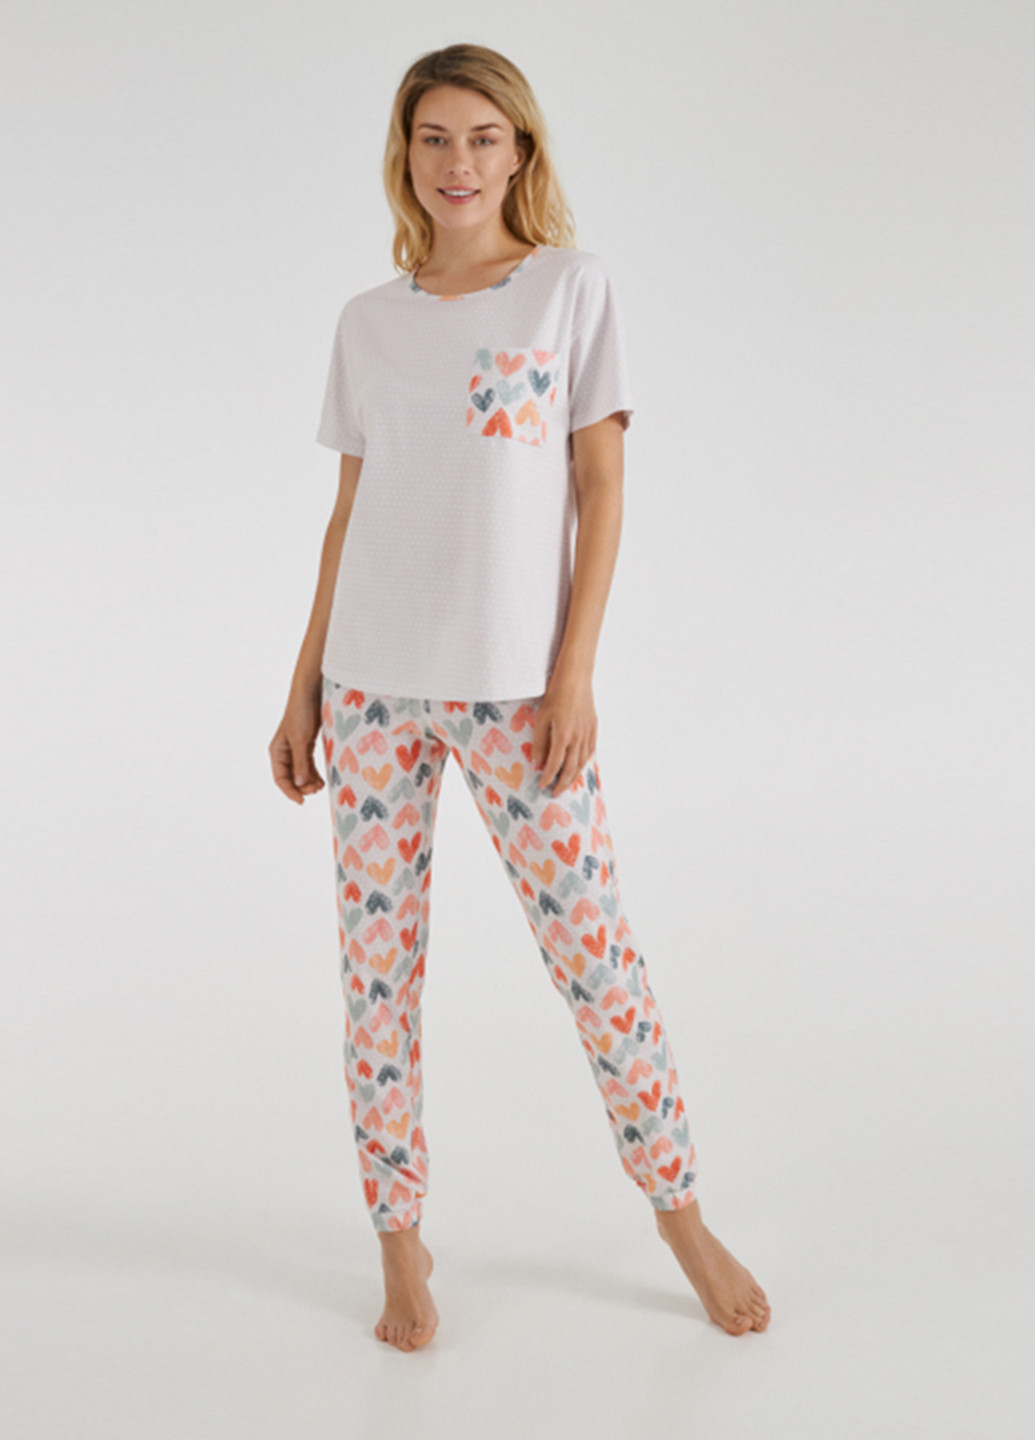 Молочная всесезон пижама (футболка, брюки) футболка + брюки Ellen